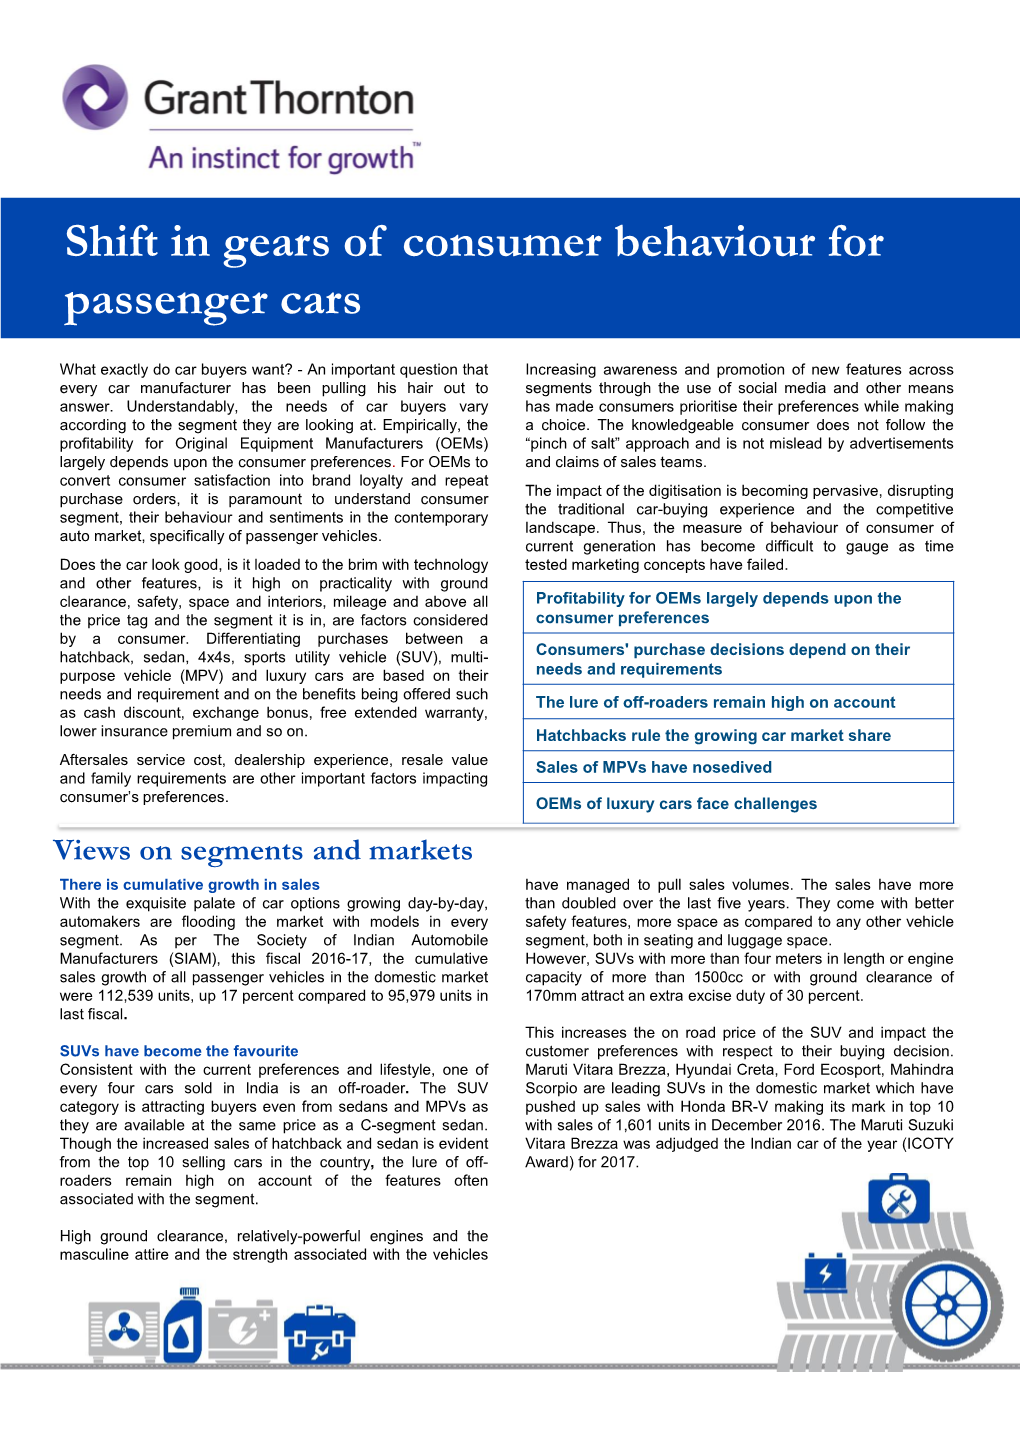 Shift in Gears of Consumer Behaviour for Passenger Cars